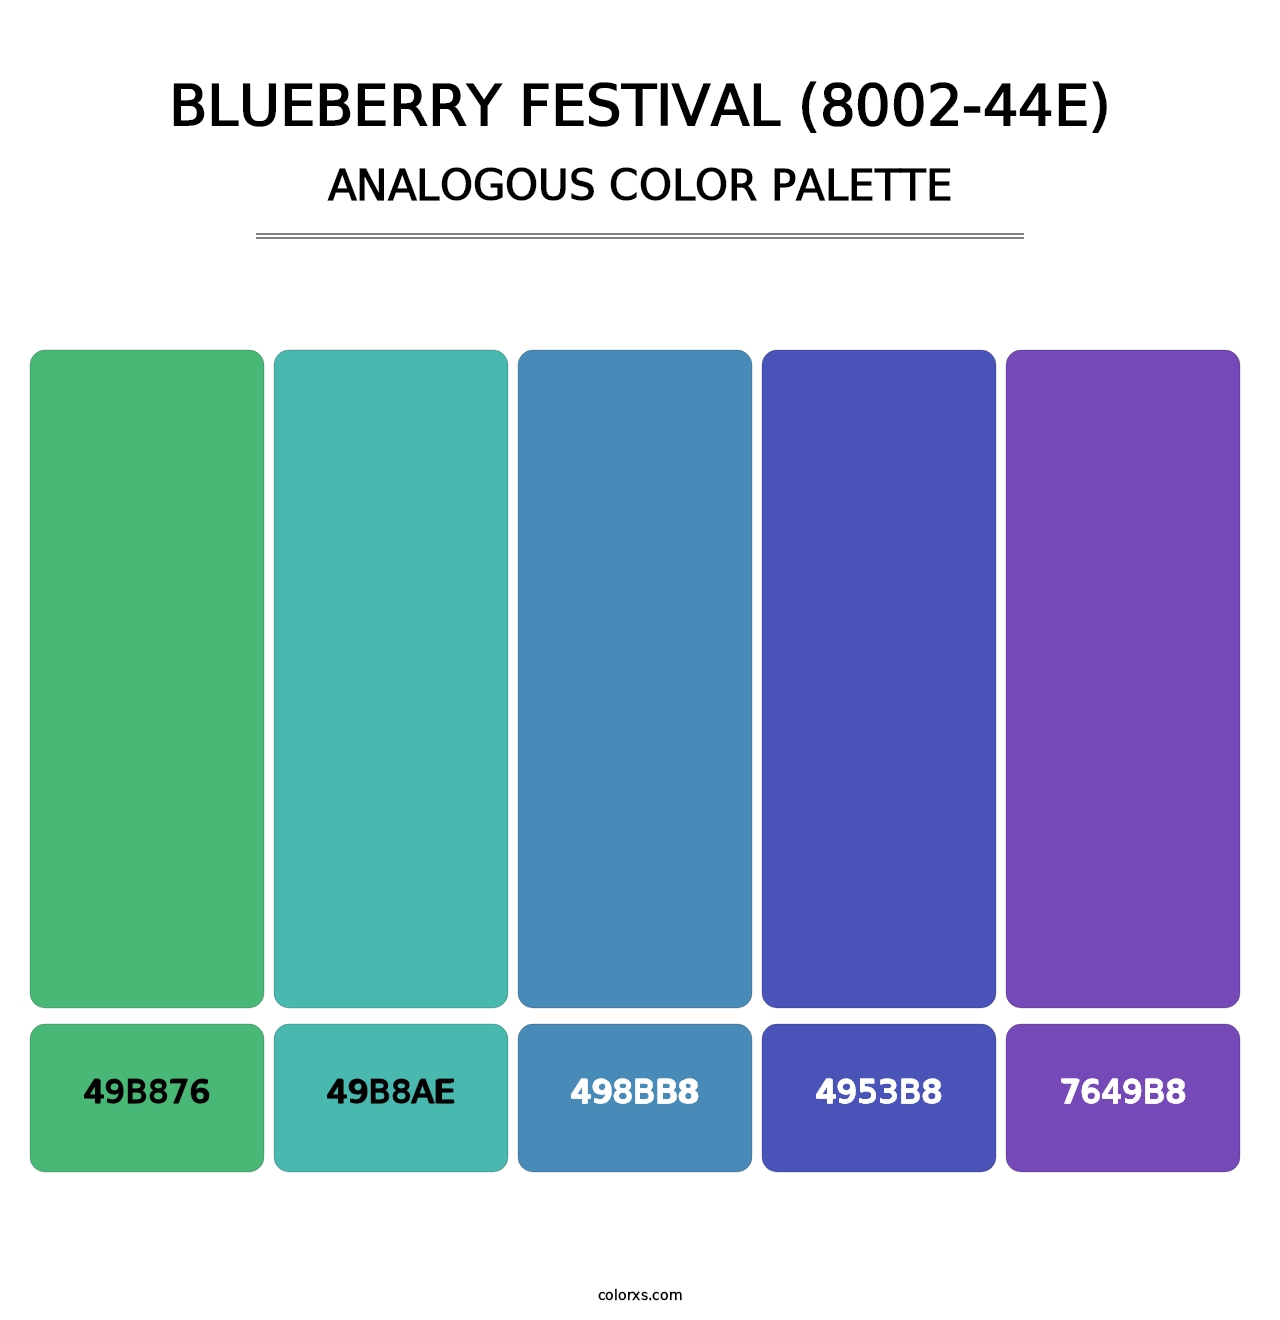 Blueberry Festival (8002-44E) - Analogous Color Palette